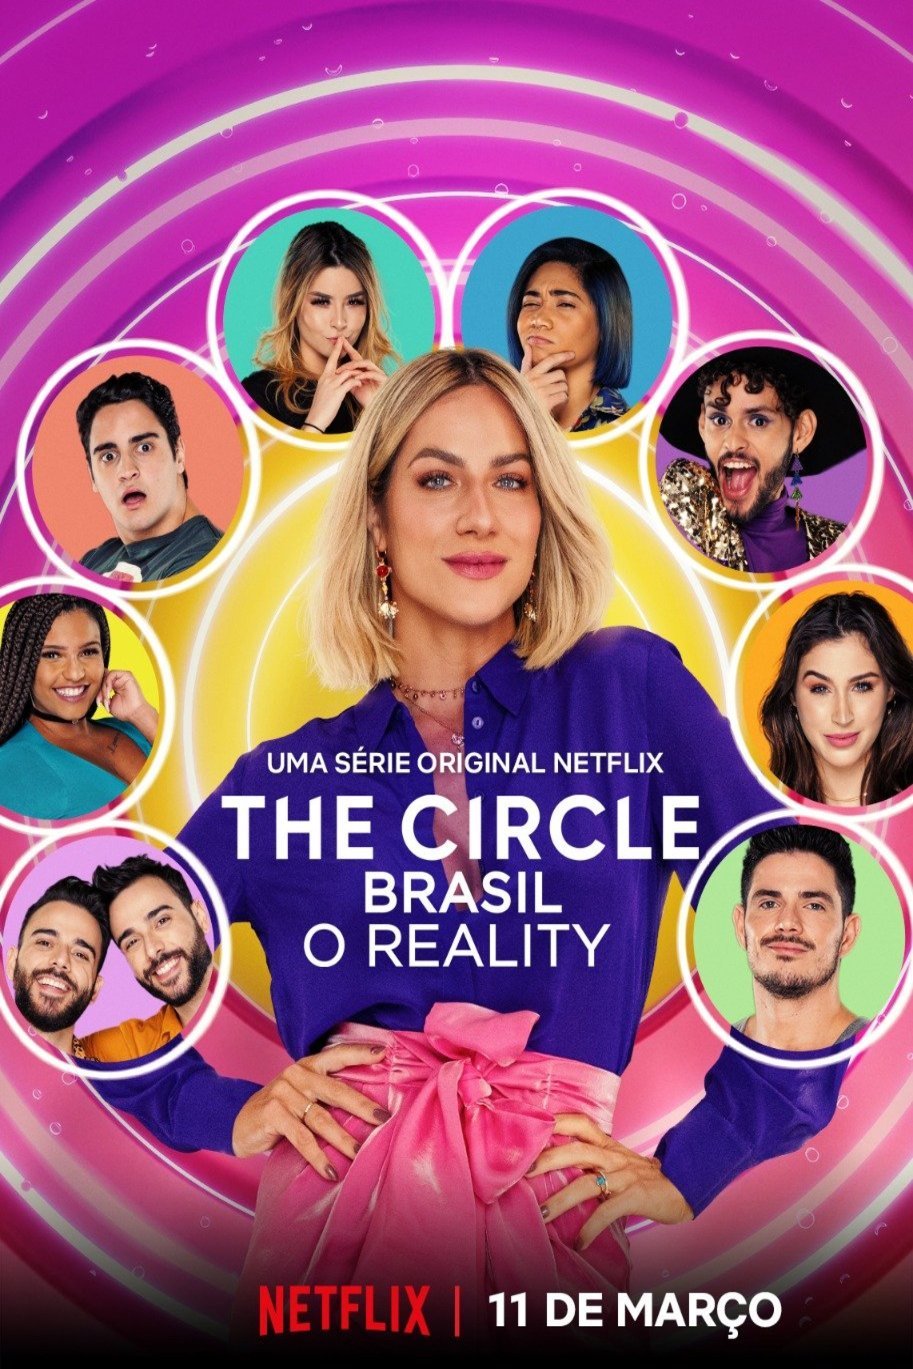 L'affiche originale du film The Circle: Brazil en portugais